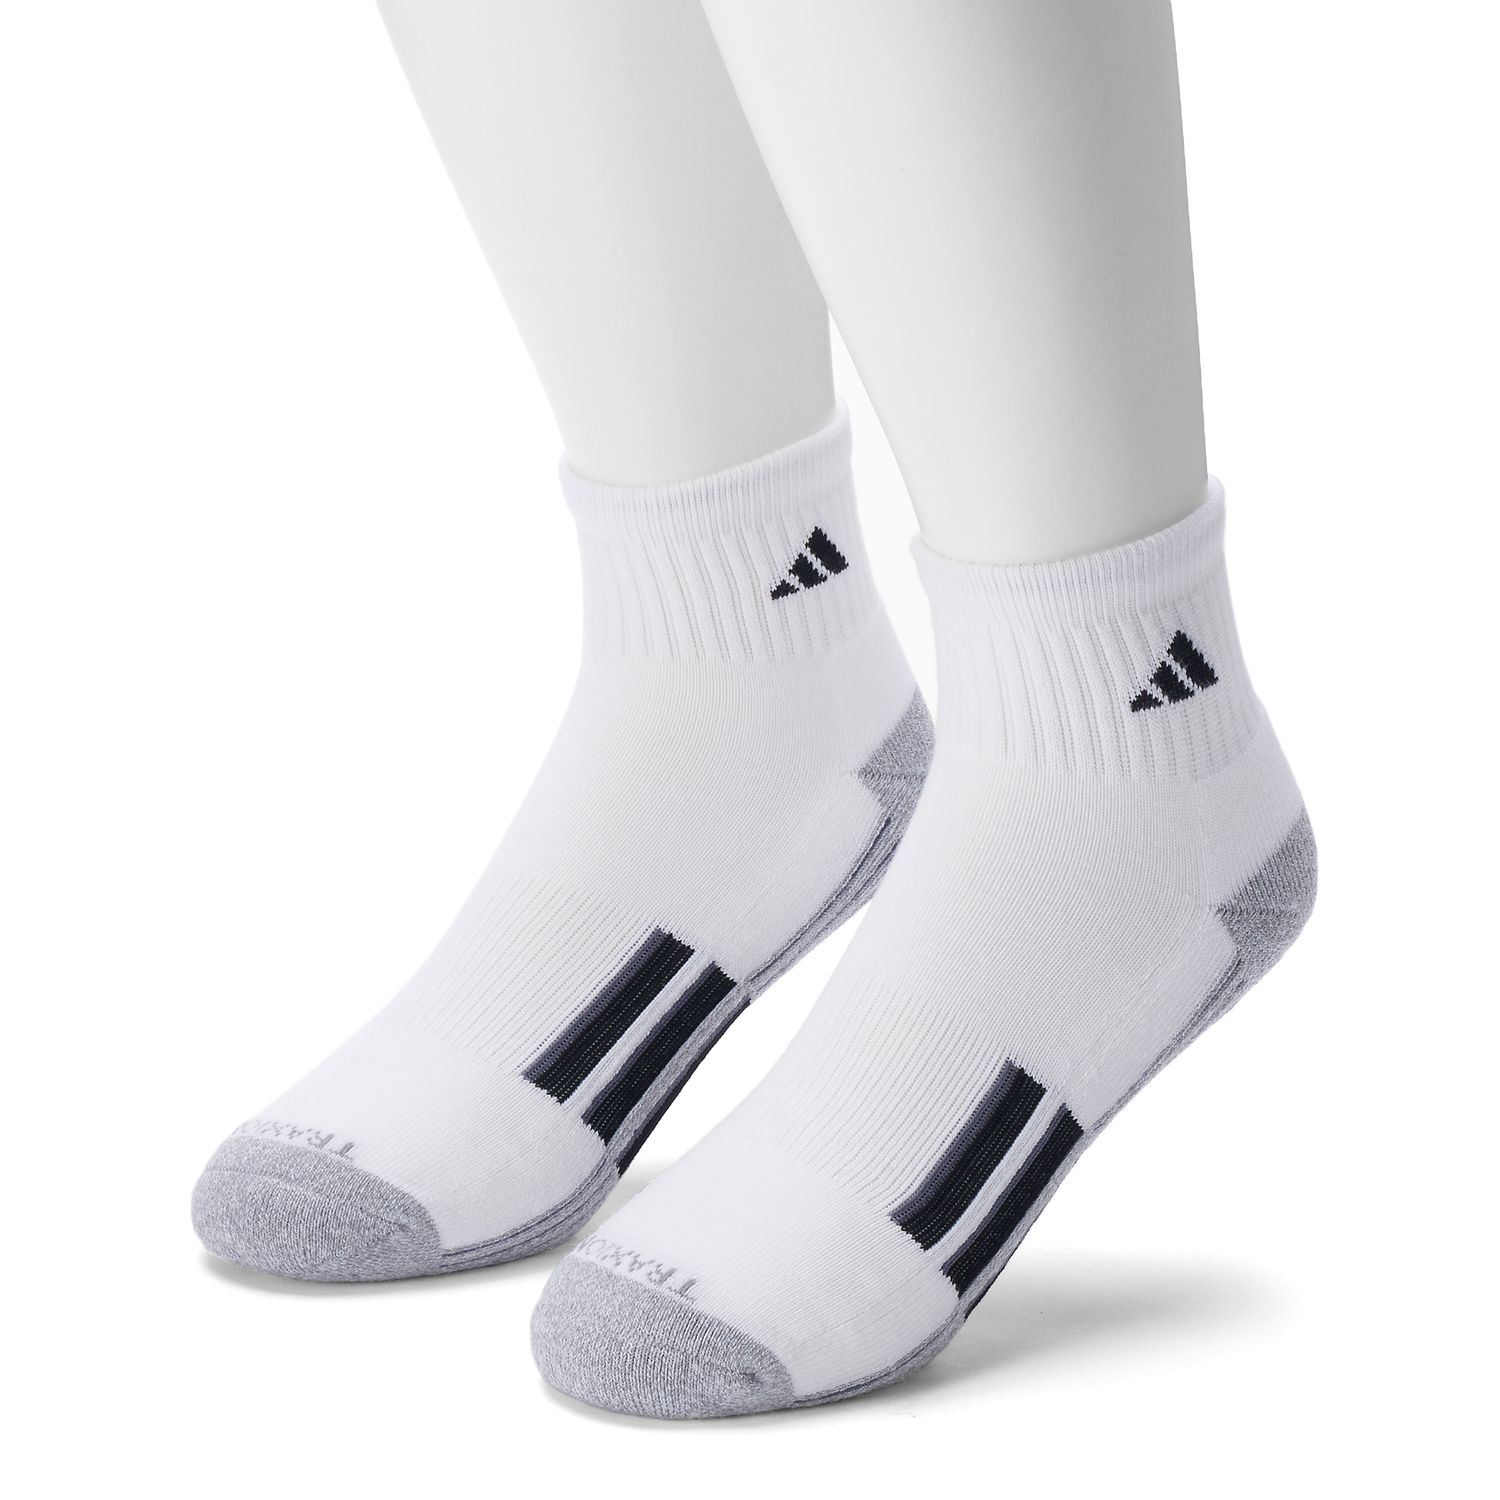 adidas men's ankle socks